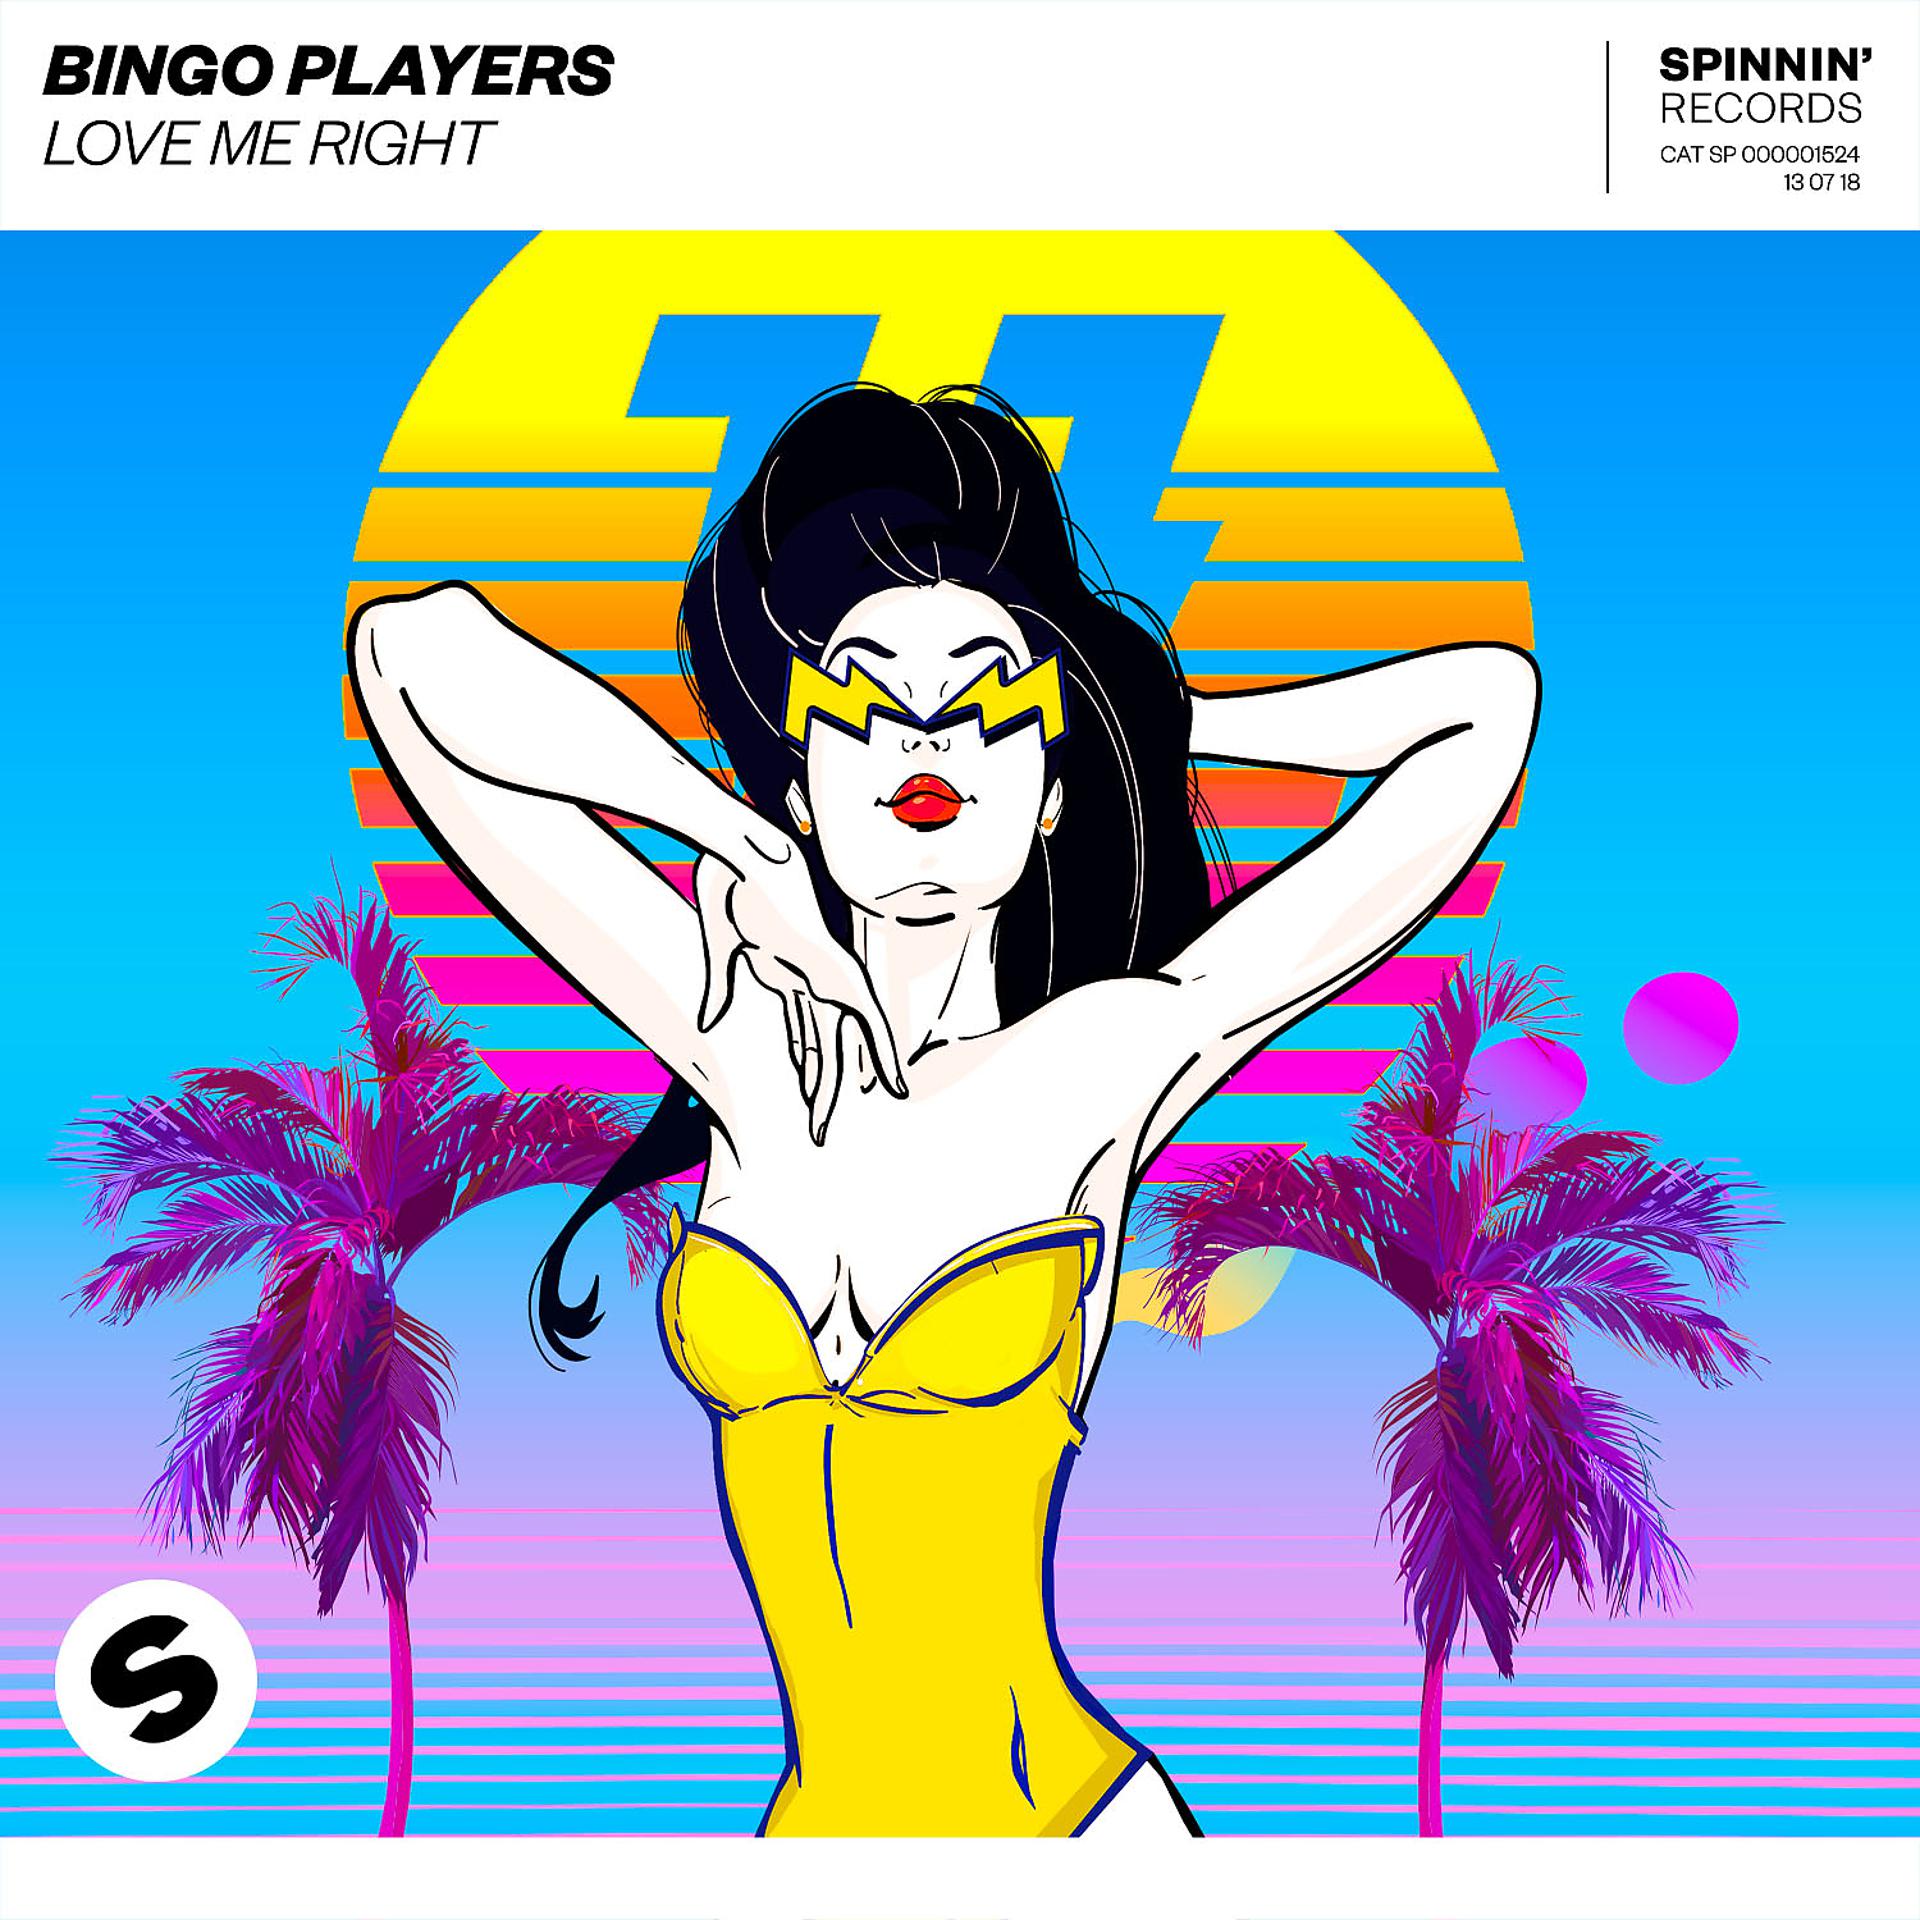 Bingo players. Bingo Players Chop. Chop(Original Mix) Bingo Players. Love me right Bingo Players best of 2018 year Mix.